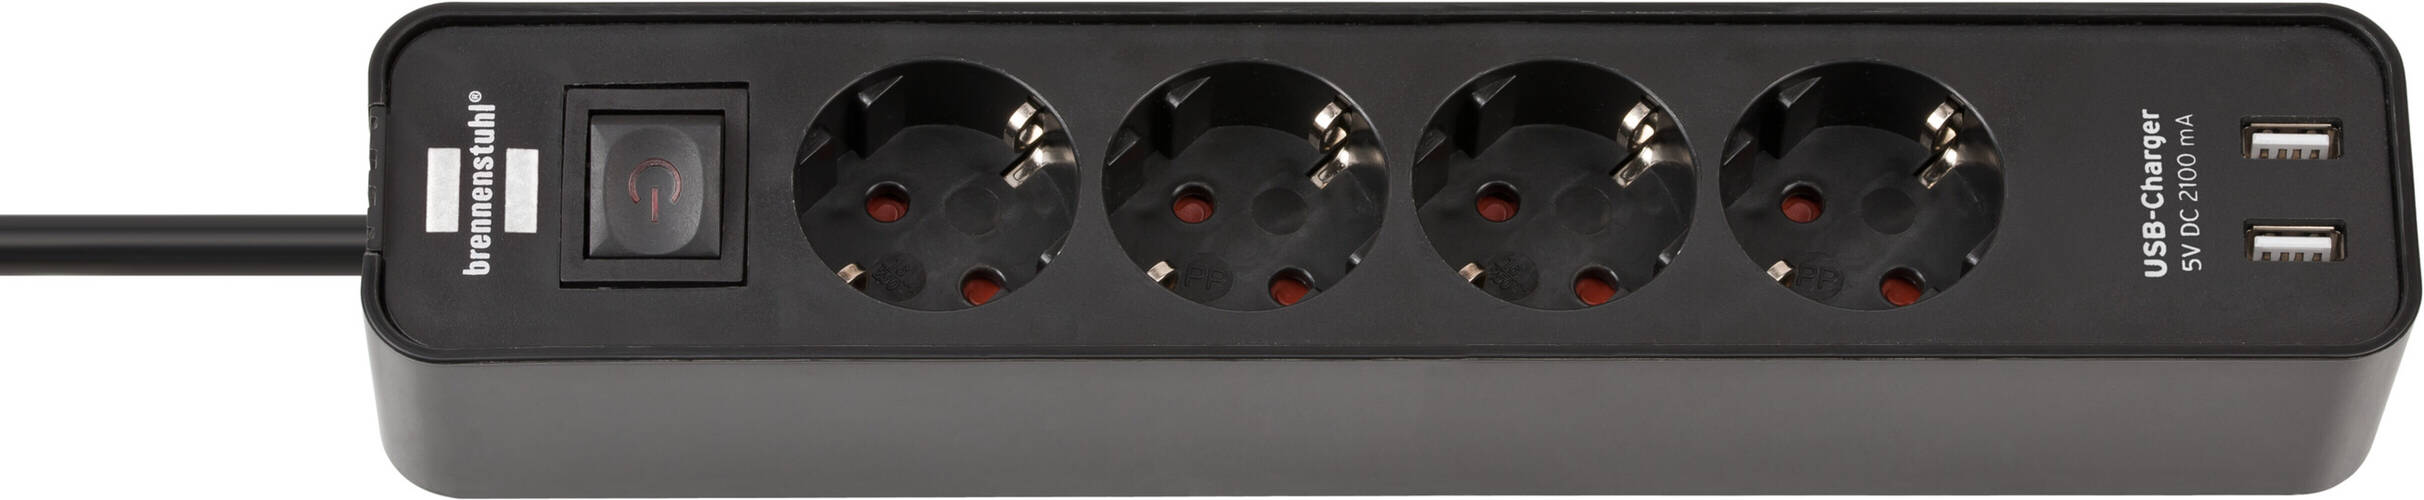 Hochwertige Steckdosenleiste von Brennenstuhl mit USB Ladefunktion und schwarzem Design